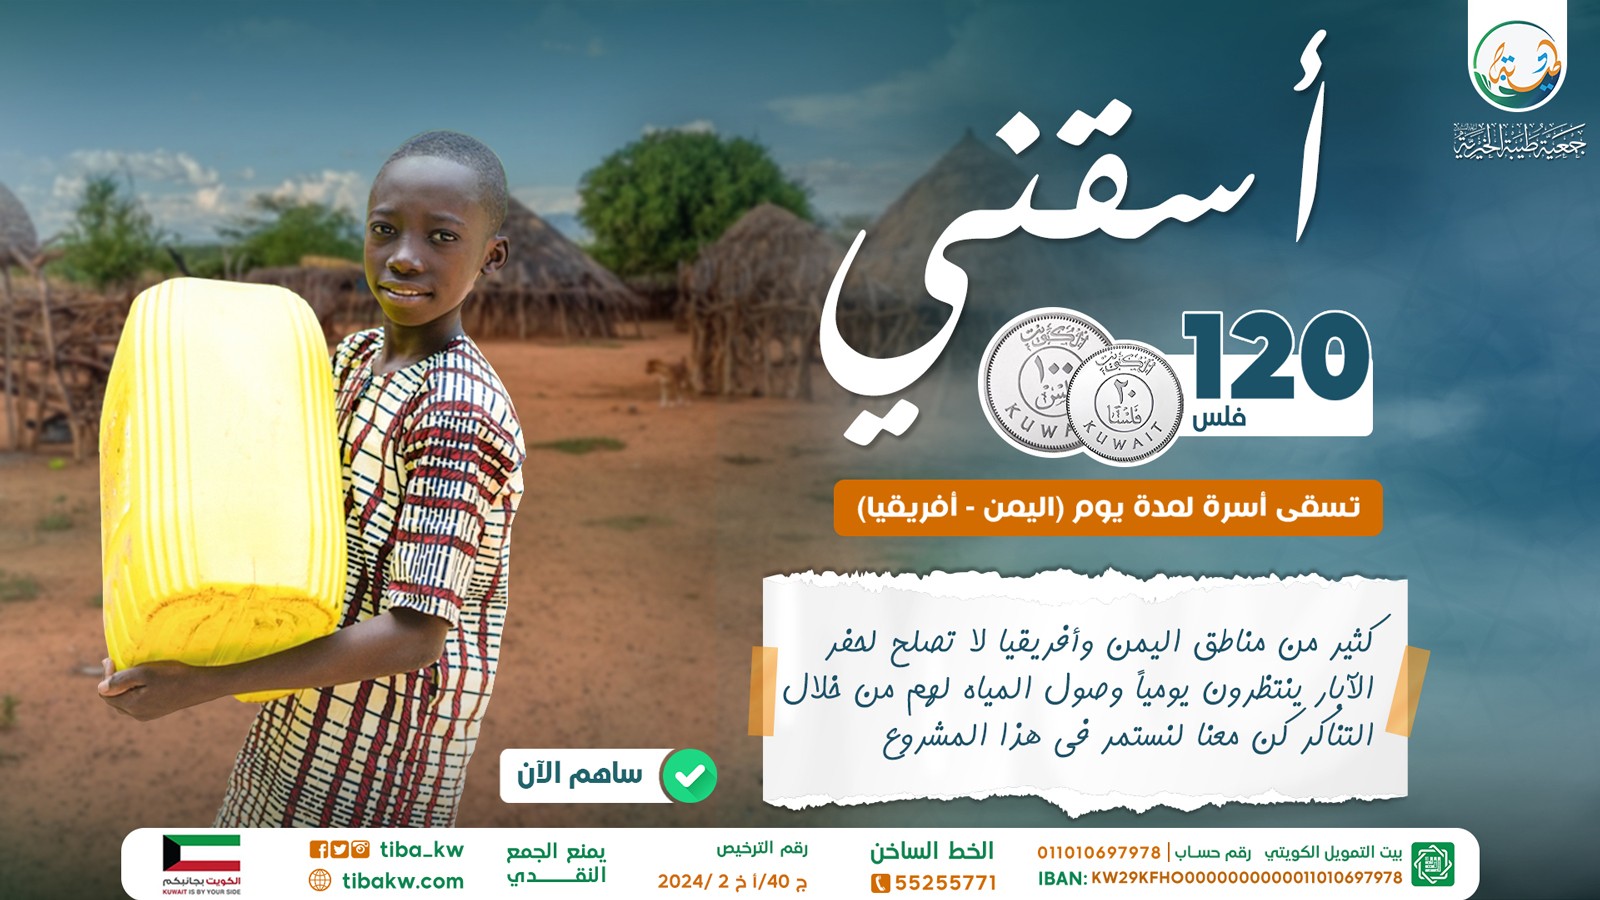 مشروع ( اسقني ) لتوفير المياه للأسر الفقيرة باليمن وأفريقيا